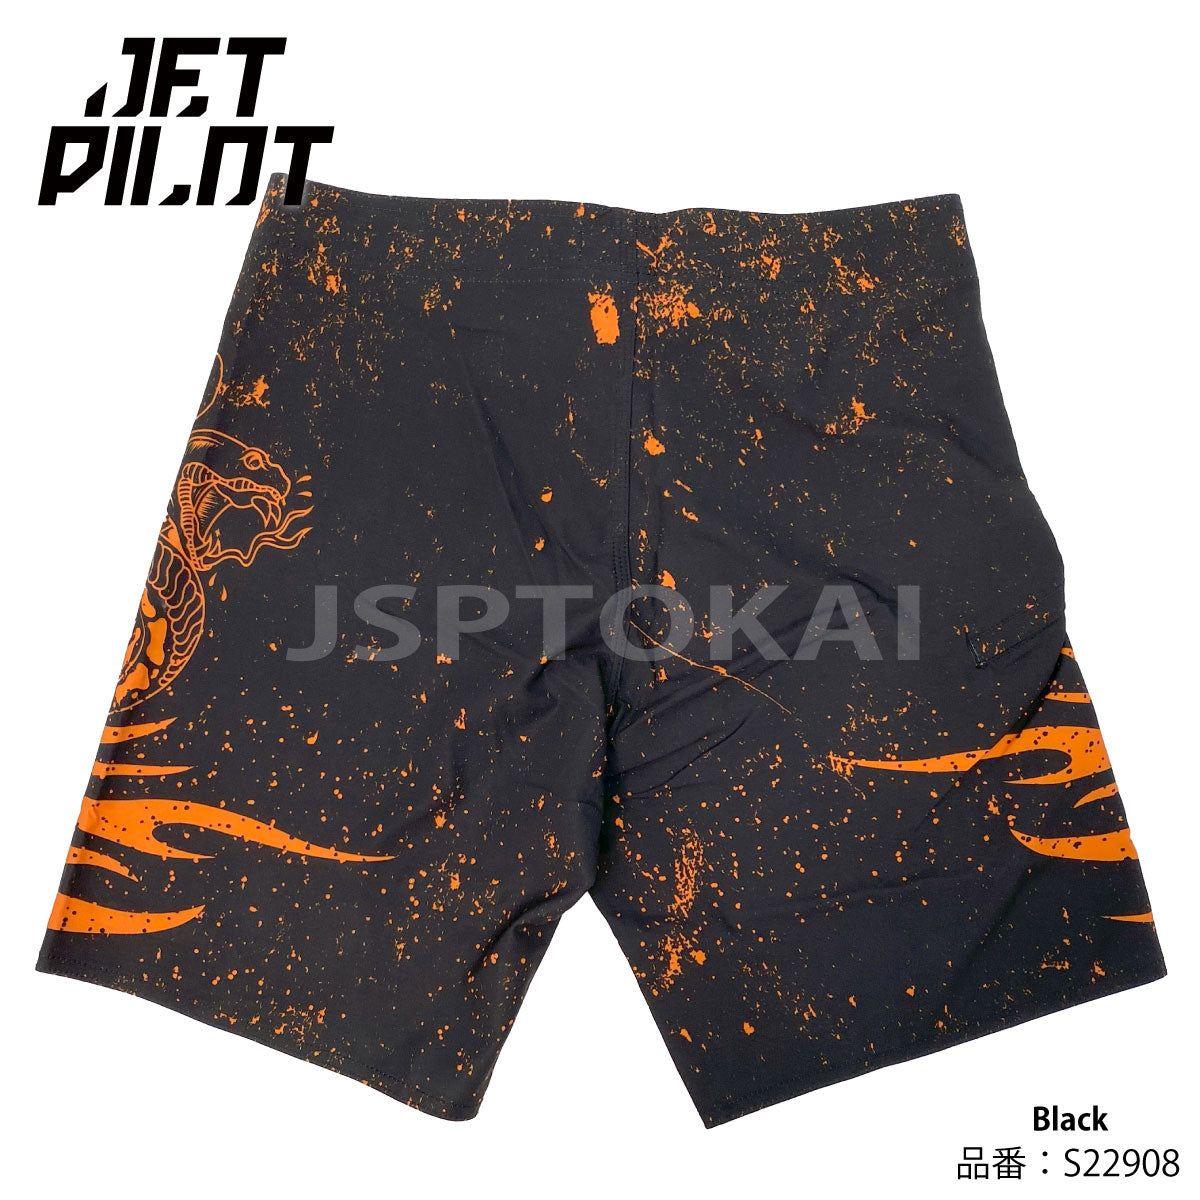 [SALE] JETPILOT TATTS MEN'S BOARDSHORTS Jet Pilot Board Shorts S22908